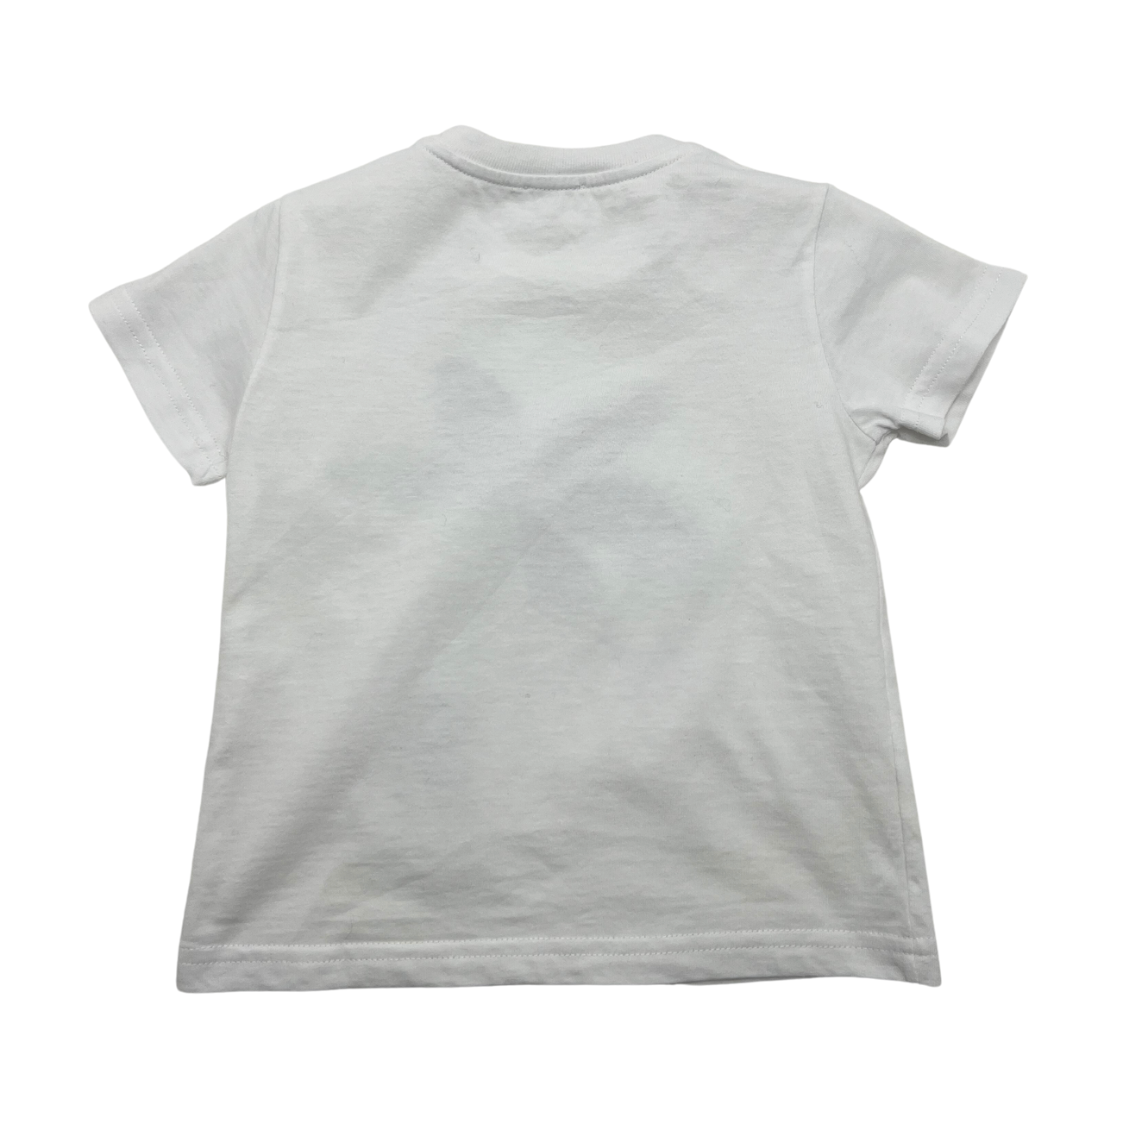 IL GUFO - T-shirt palmier - 18 mois